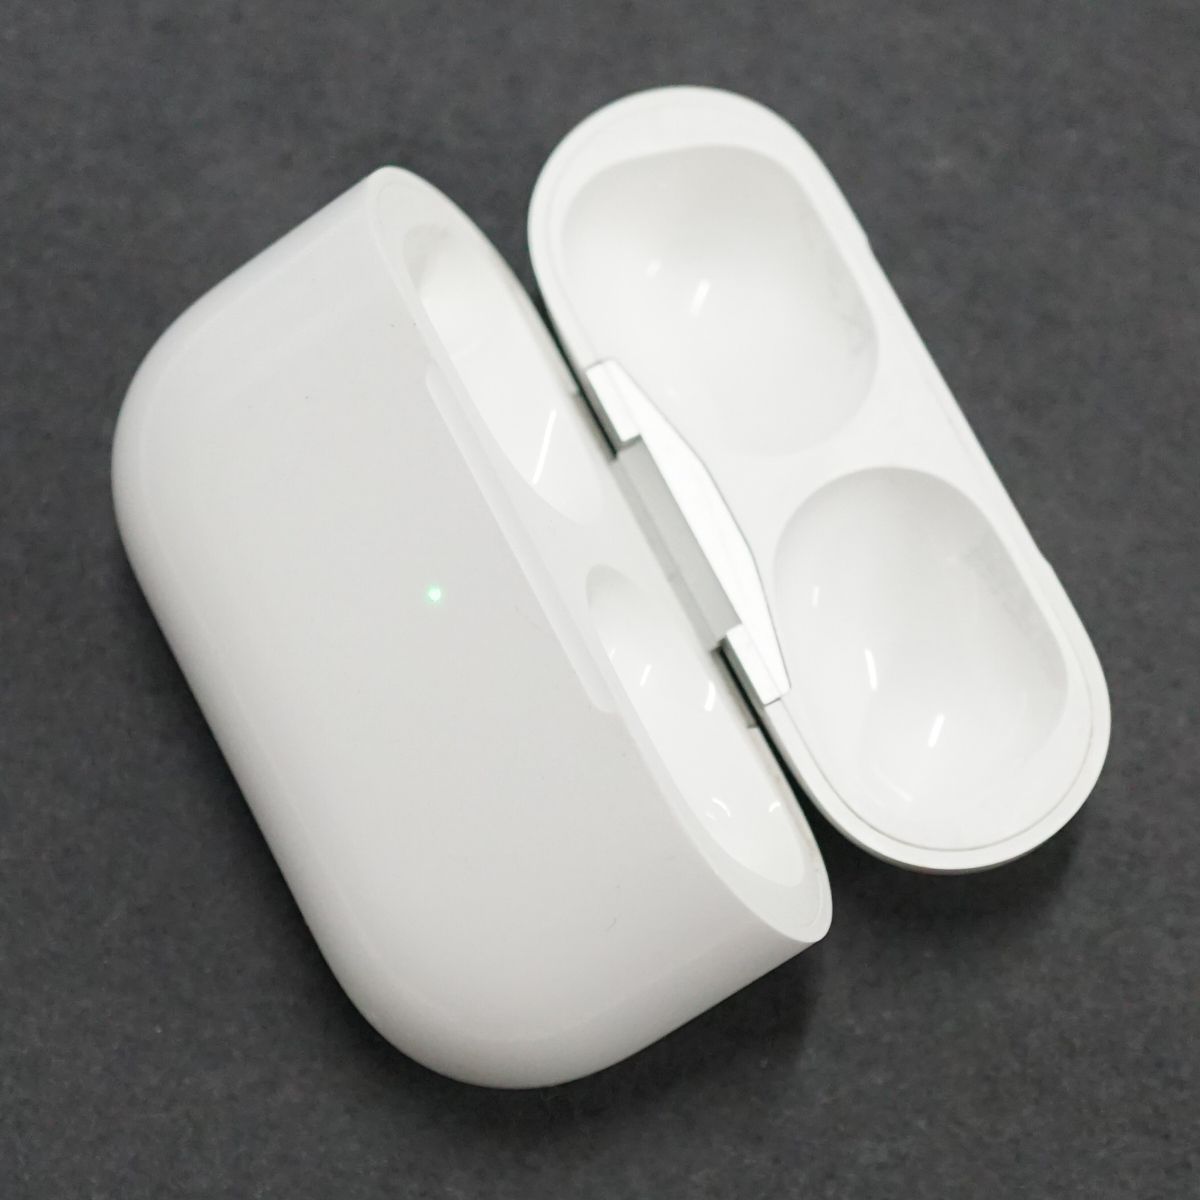 Apple AirPods Pro 充電ケースのみ USED美品 第一世代 イヤホン